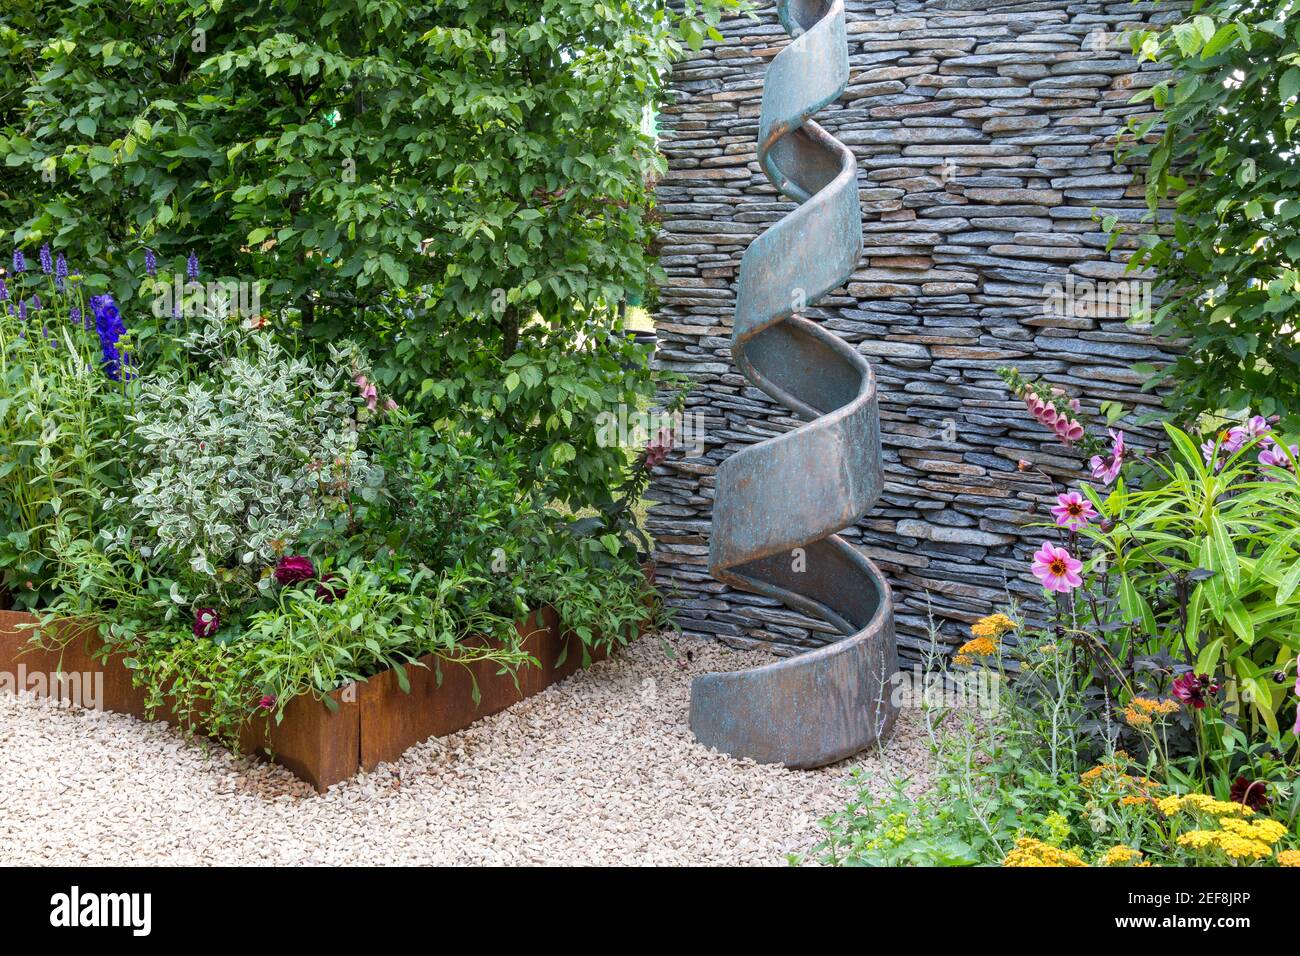 Kleiner englischer Innenhof Cottage Garten mit spiralförmiger Skulptur - trockene Steinwand - Hecke - Schotterpfad mit Gartenblumen grenzt an England UK Stockfoto